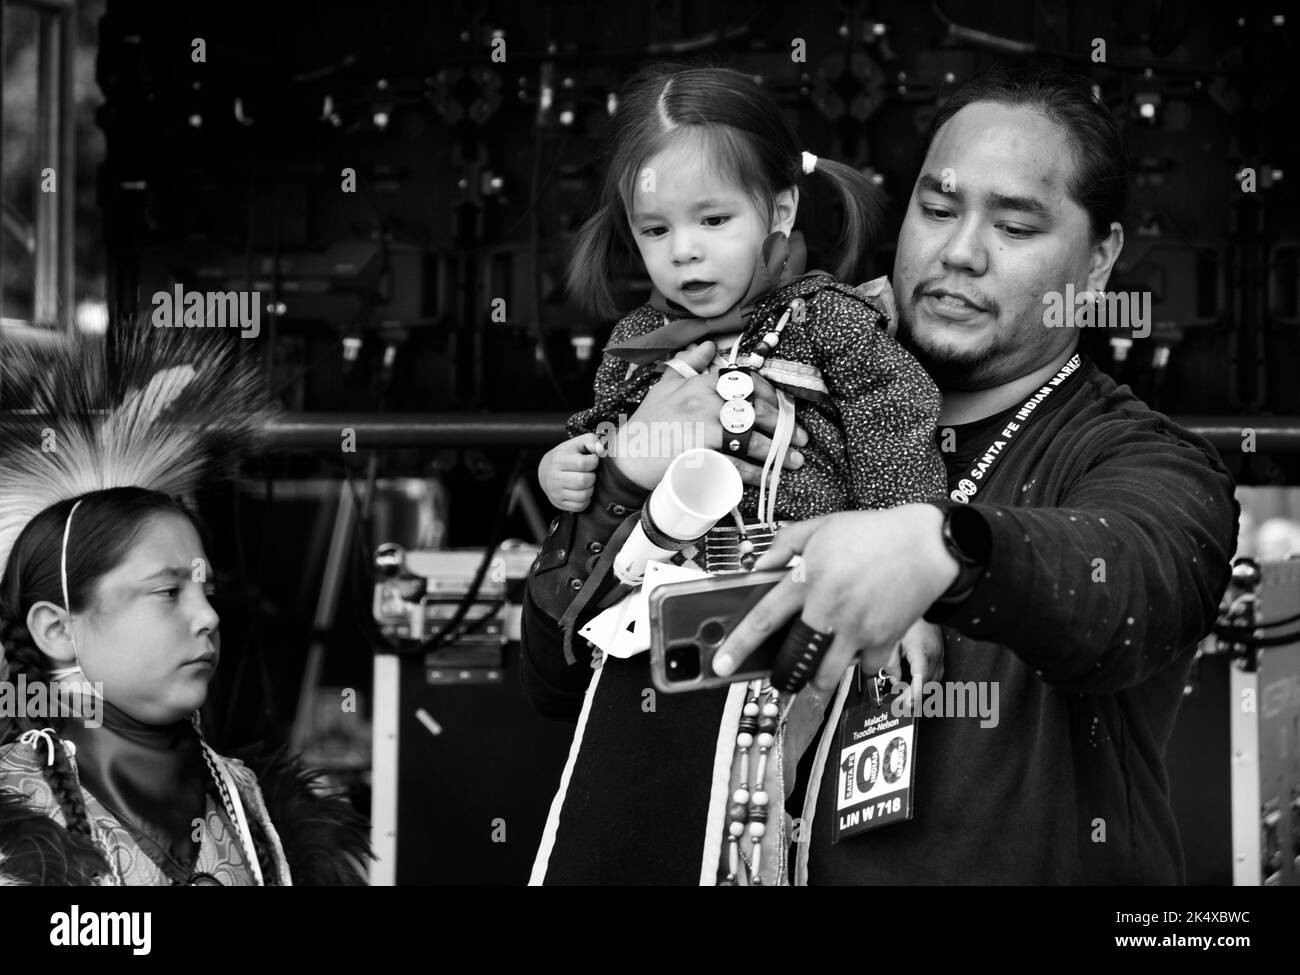 Un homme amérindien tient sa jeune fille avant qu'elle ne participe au concours de vêtements amérindiens au marché indien de Santa Fe au Nouveau-Mexique. Banque D'Images